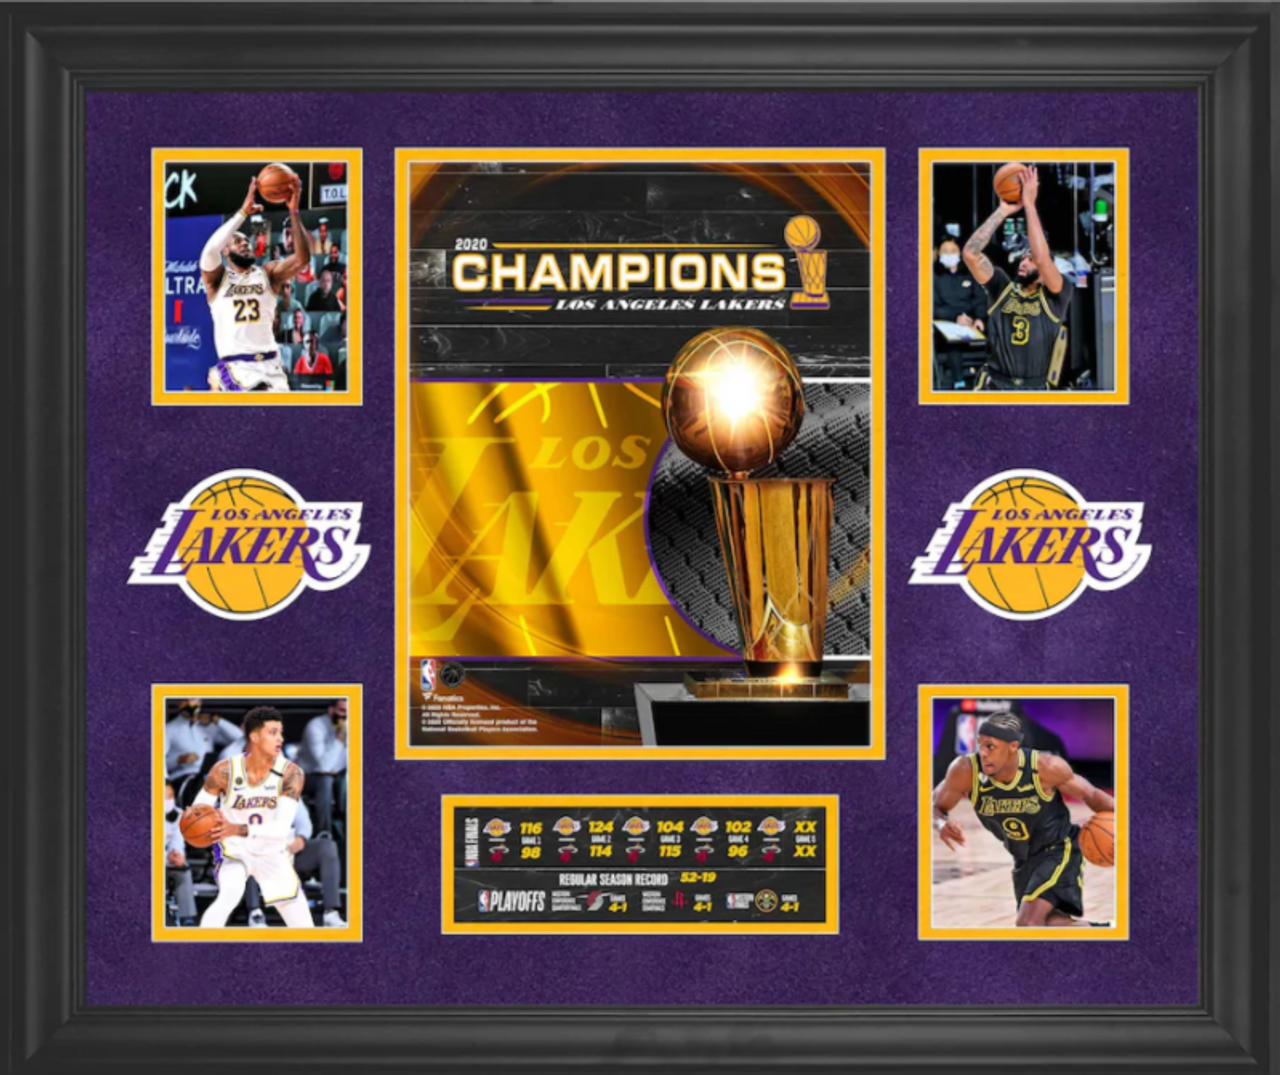 Los Angeles Lakers 2020 NBA Champions basketball signatures shirt